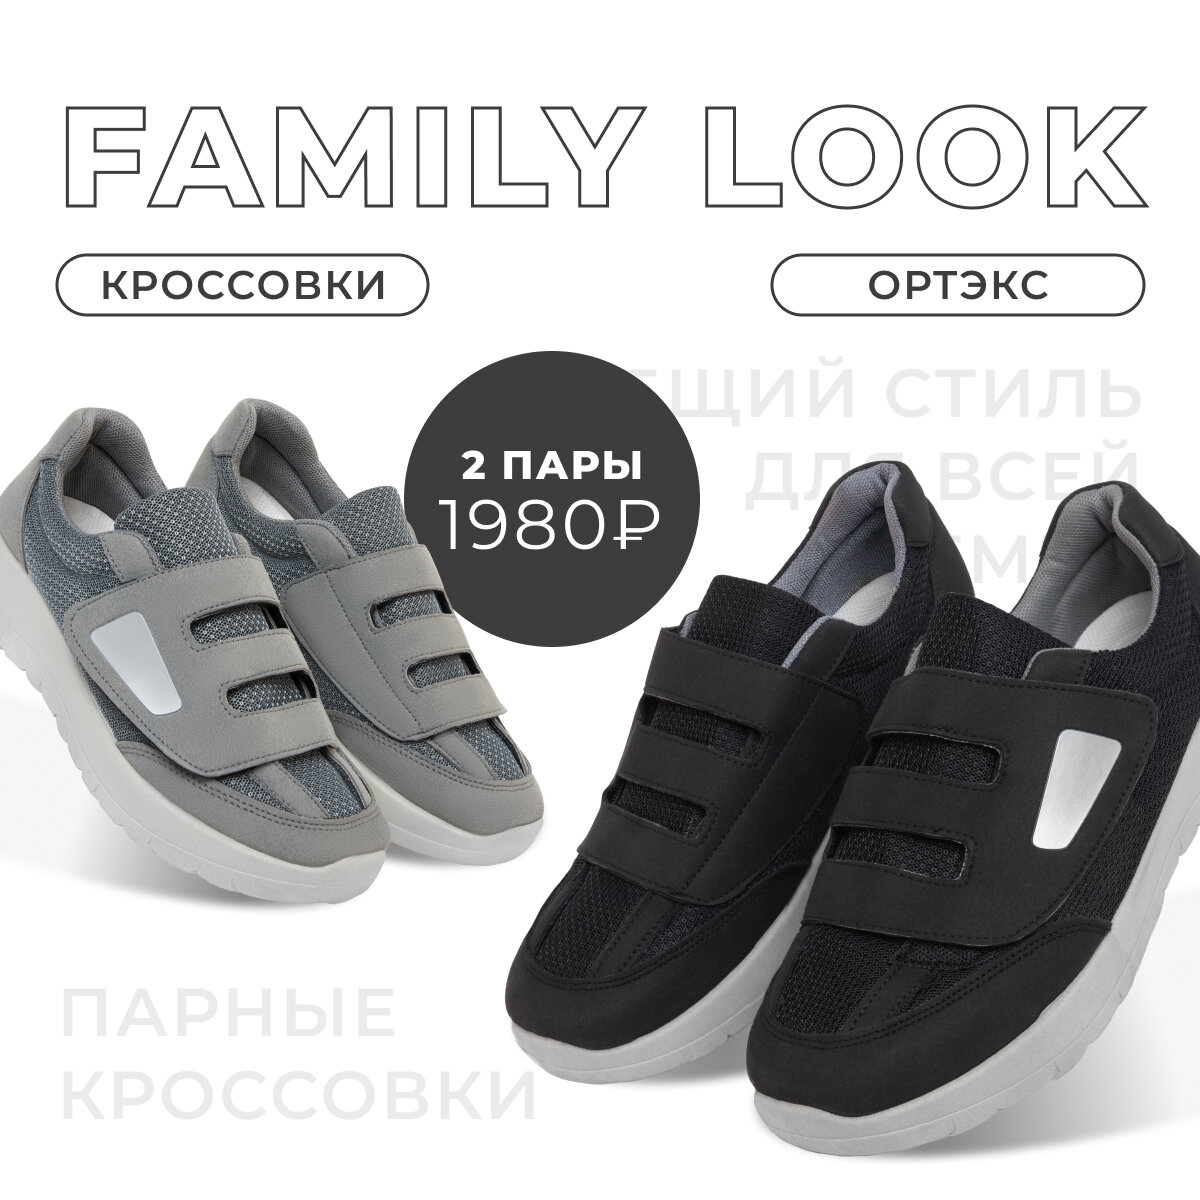 Фэмили лук (Family look) – это стильные, красивые и по-семейному уютные образы. Семейный стиль визуально объединяет всех членов семьи и показывает окружающим, что вы – единое целое.-2